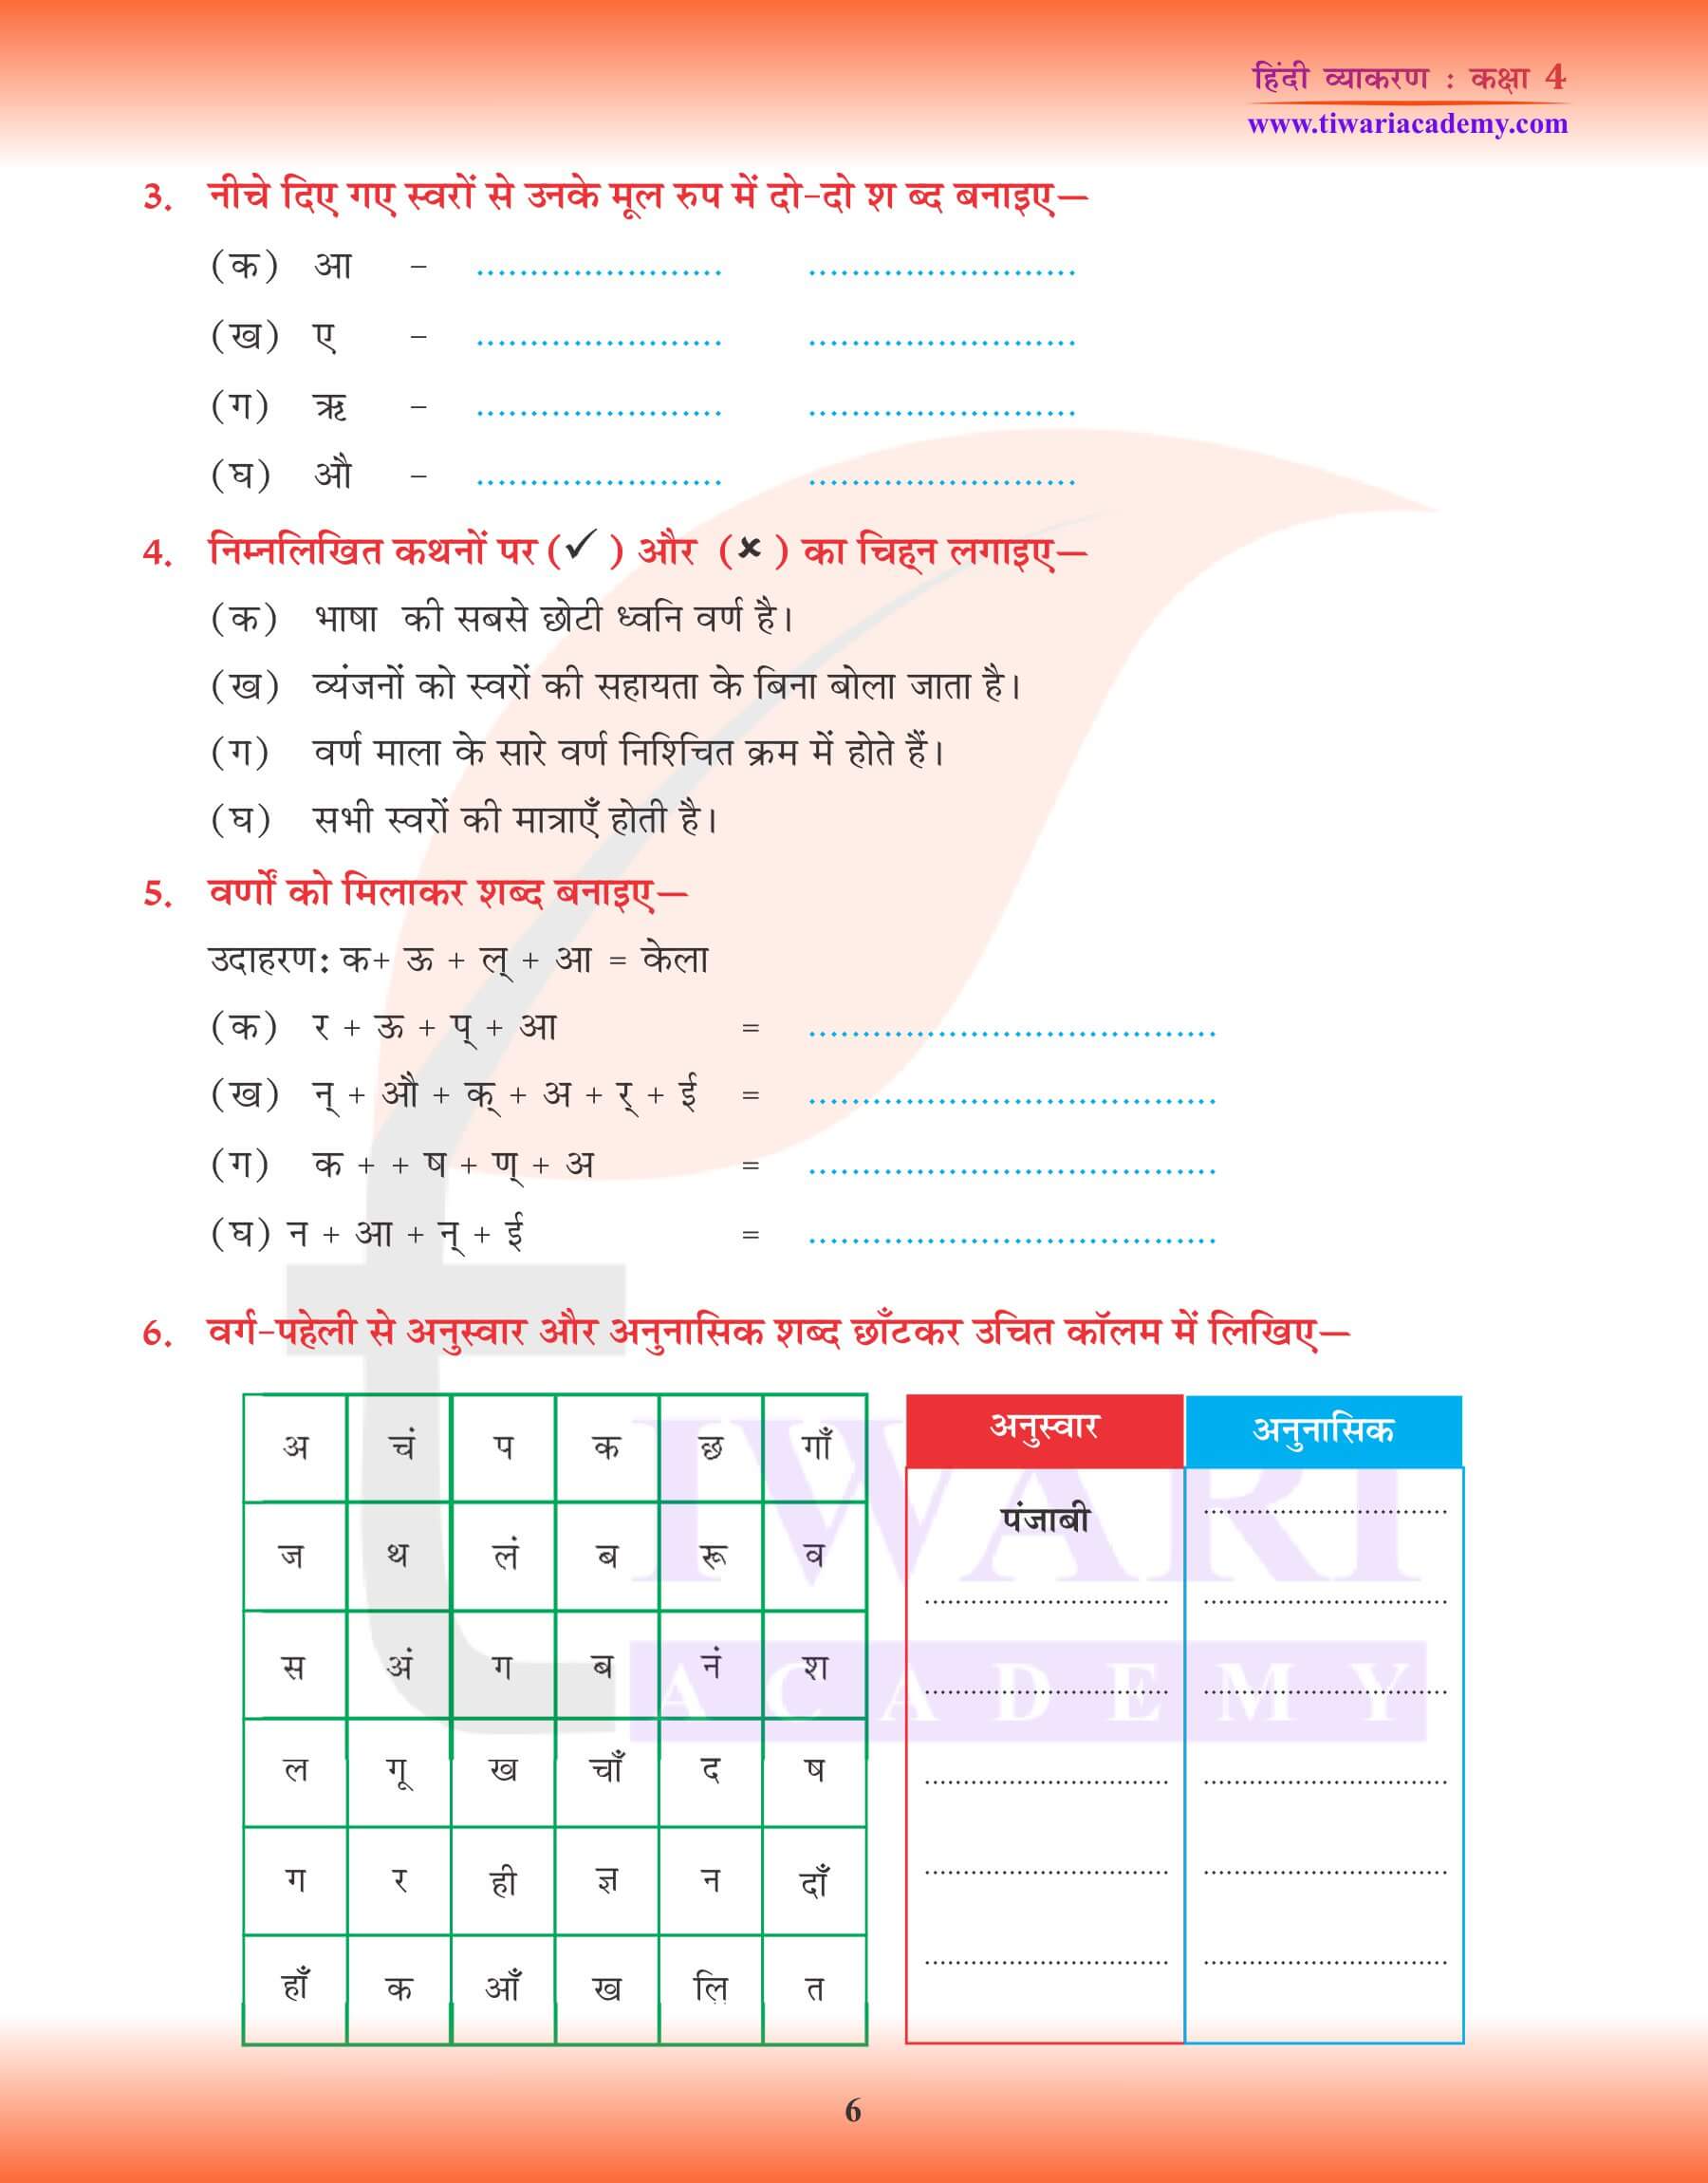 कक्षा 4 हिंदी व्याकरण में वर्ण, वर्णमाला और मात्रा के प्रश्न